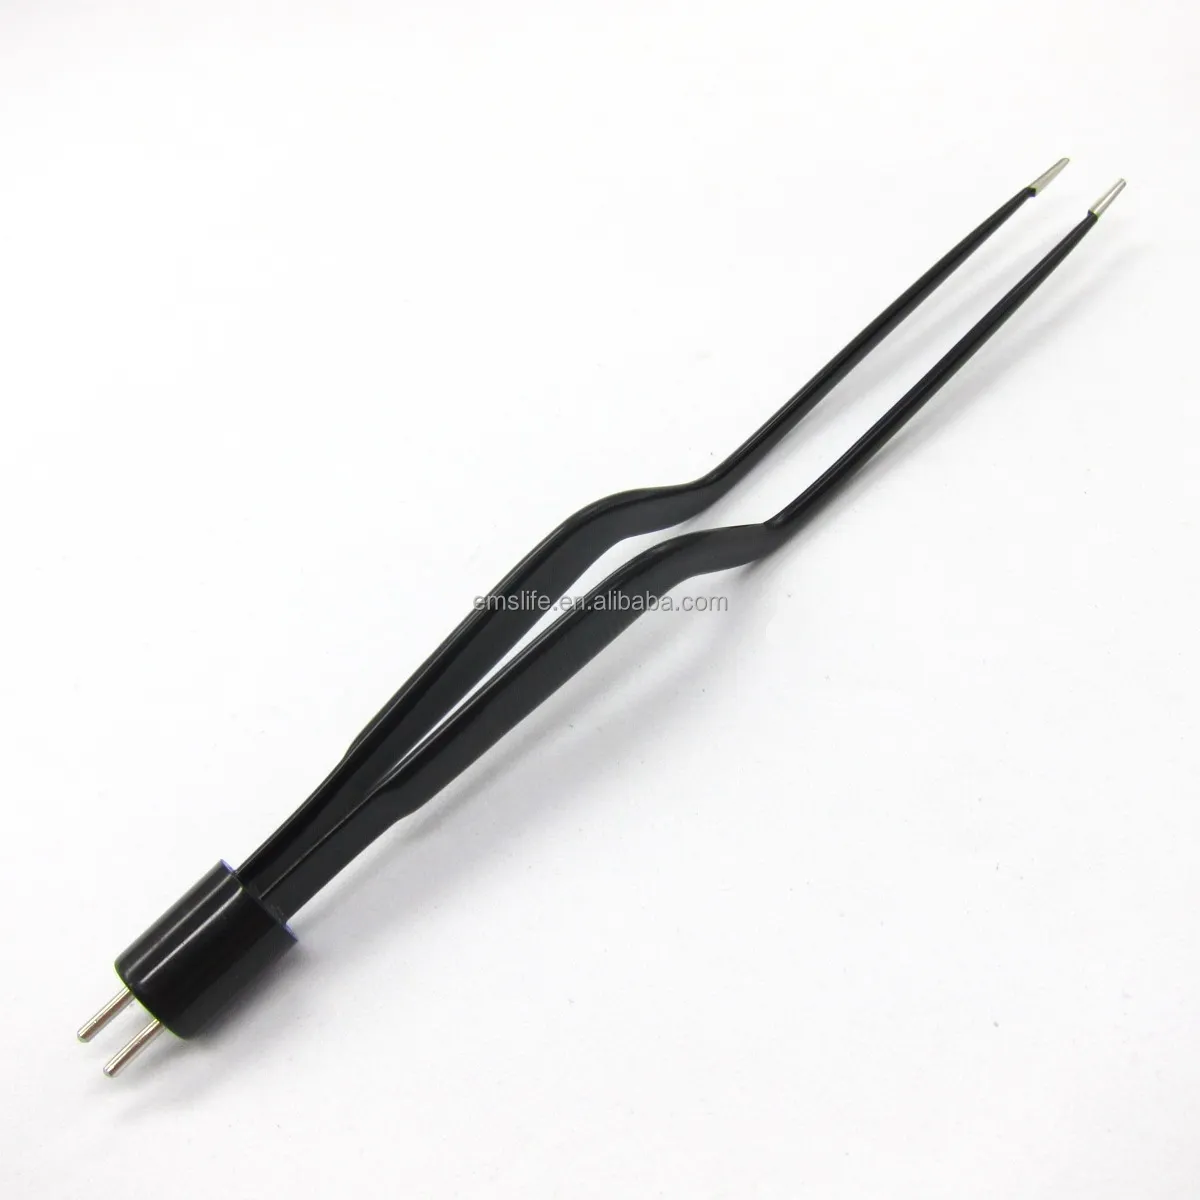 Pincettes bipolarisées antiadhésives revêtues en Nylon, noir, pincettes d'électrostimulation avec crayon à électrode